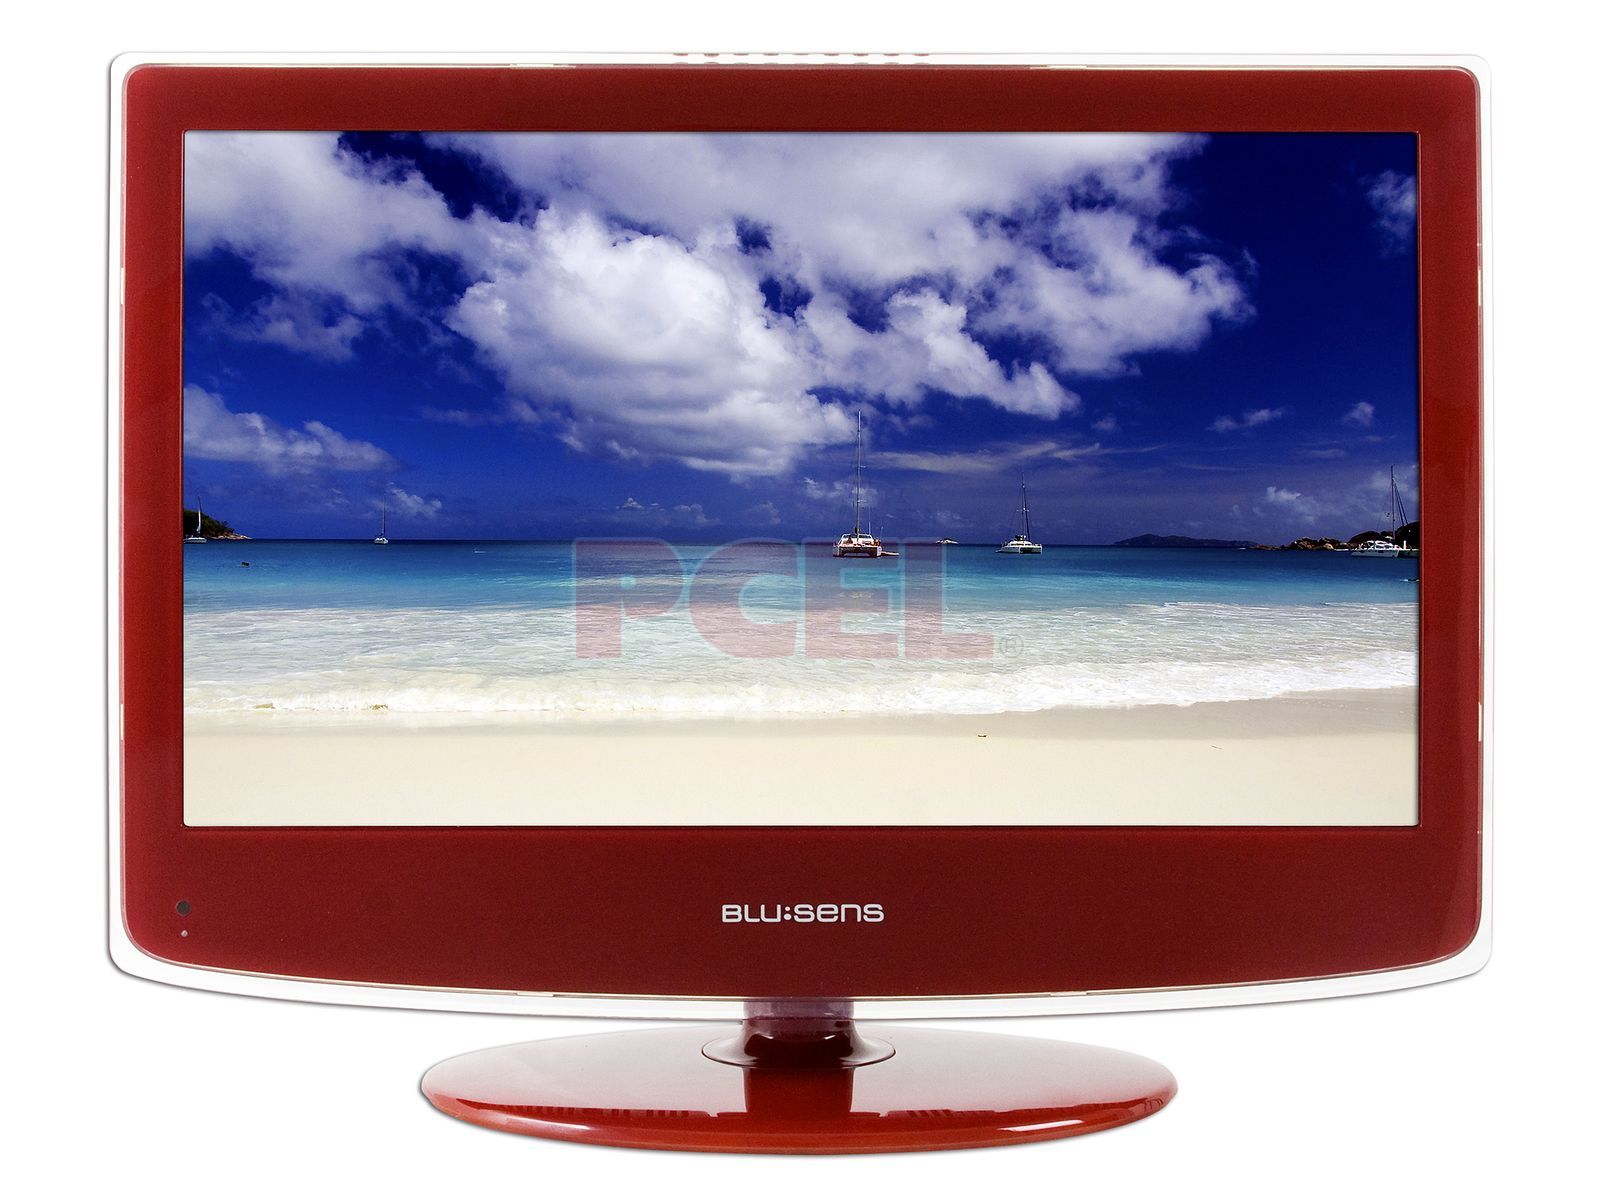 Blusens Web TV, este reproductor de Blusens recibe algunas mejoras